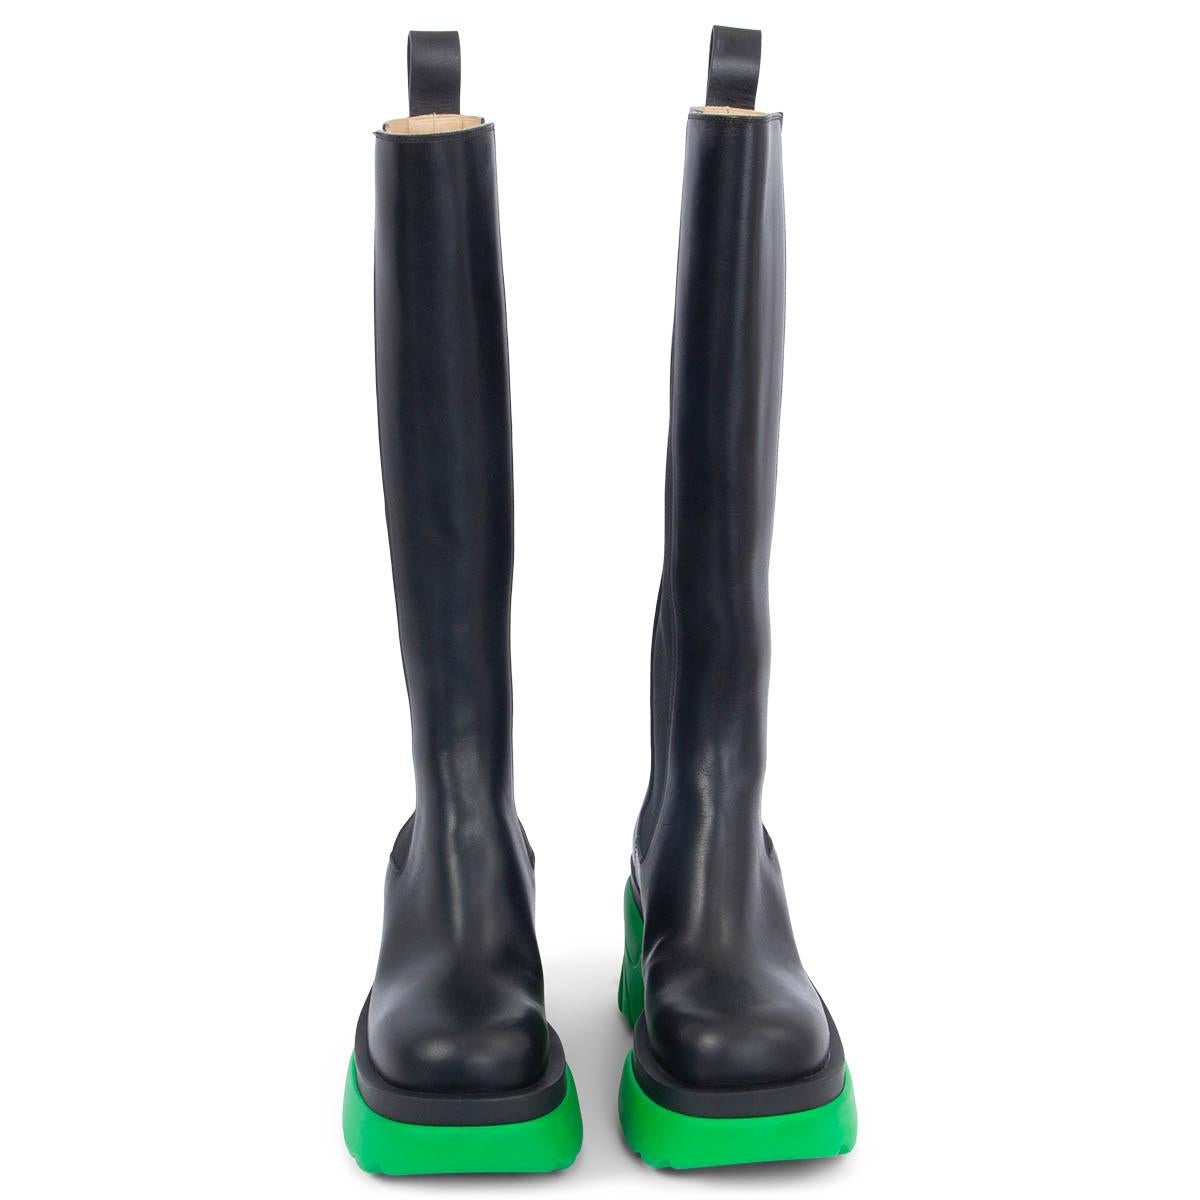 100% authentische kniehohe Bottega Veneta Flash-Stiefel aus schwarzem Kalbsleder mit einer klobigen, sittichgrünen Sohle mit flammenartigen Rillen, die von Supercars inspiriert ist. Das Design kommt mit elastischen Seitenfalten, einer Zuglasche an